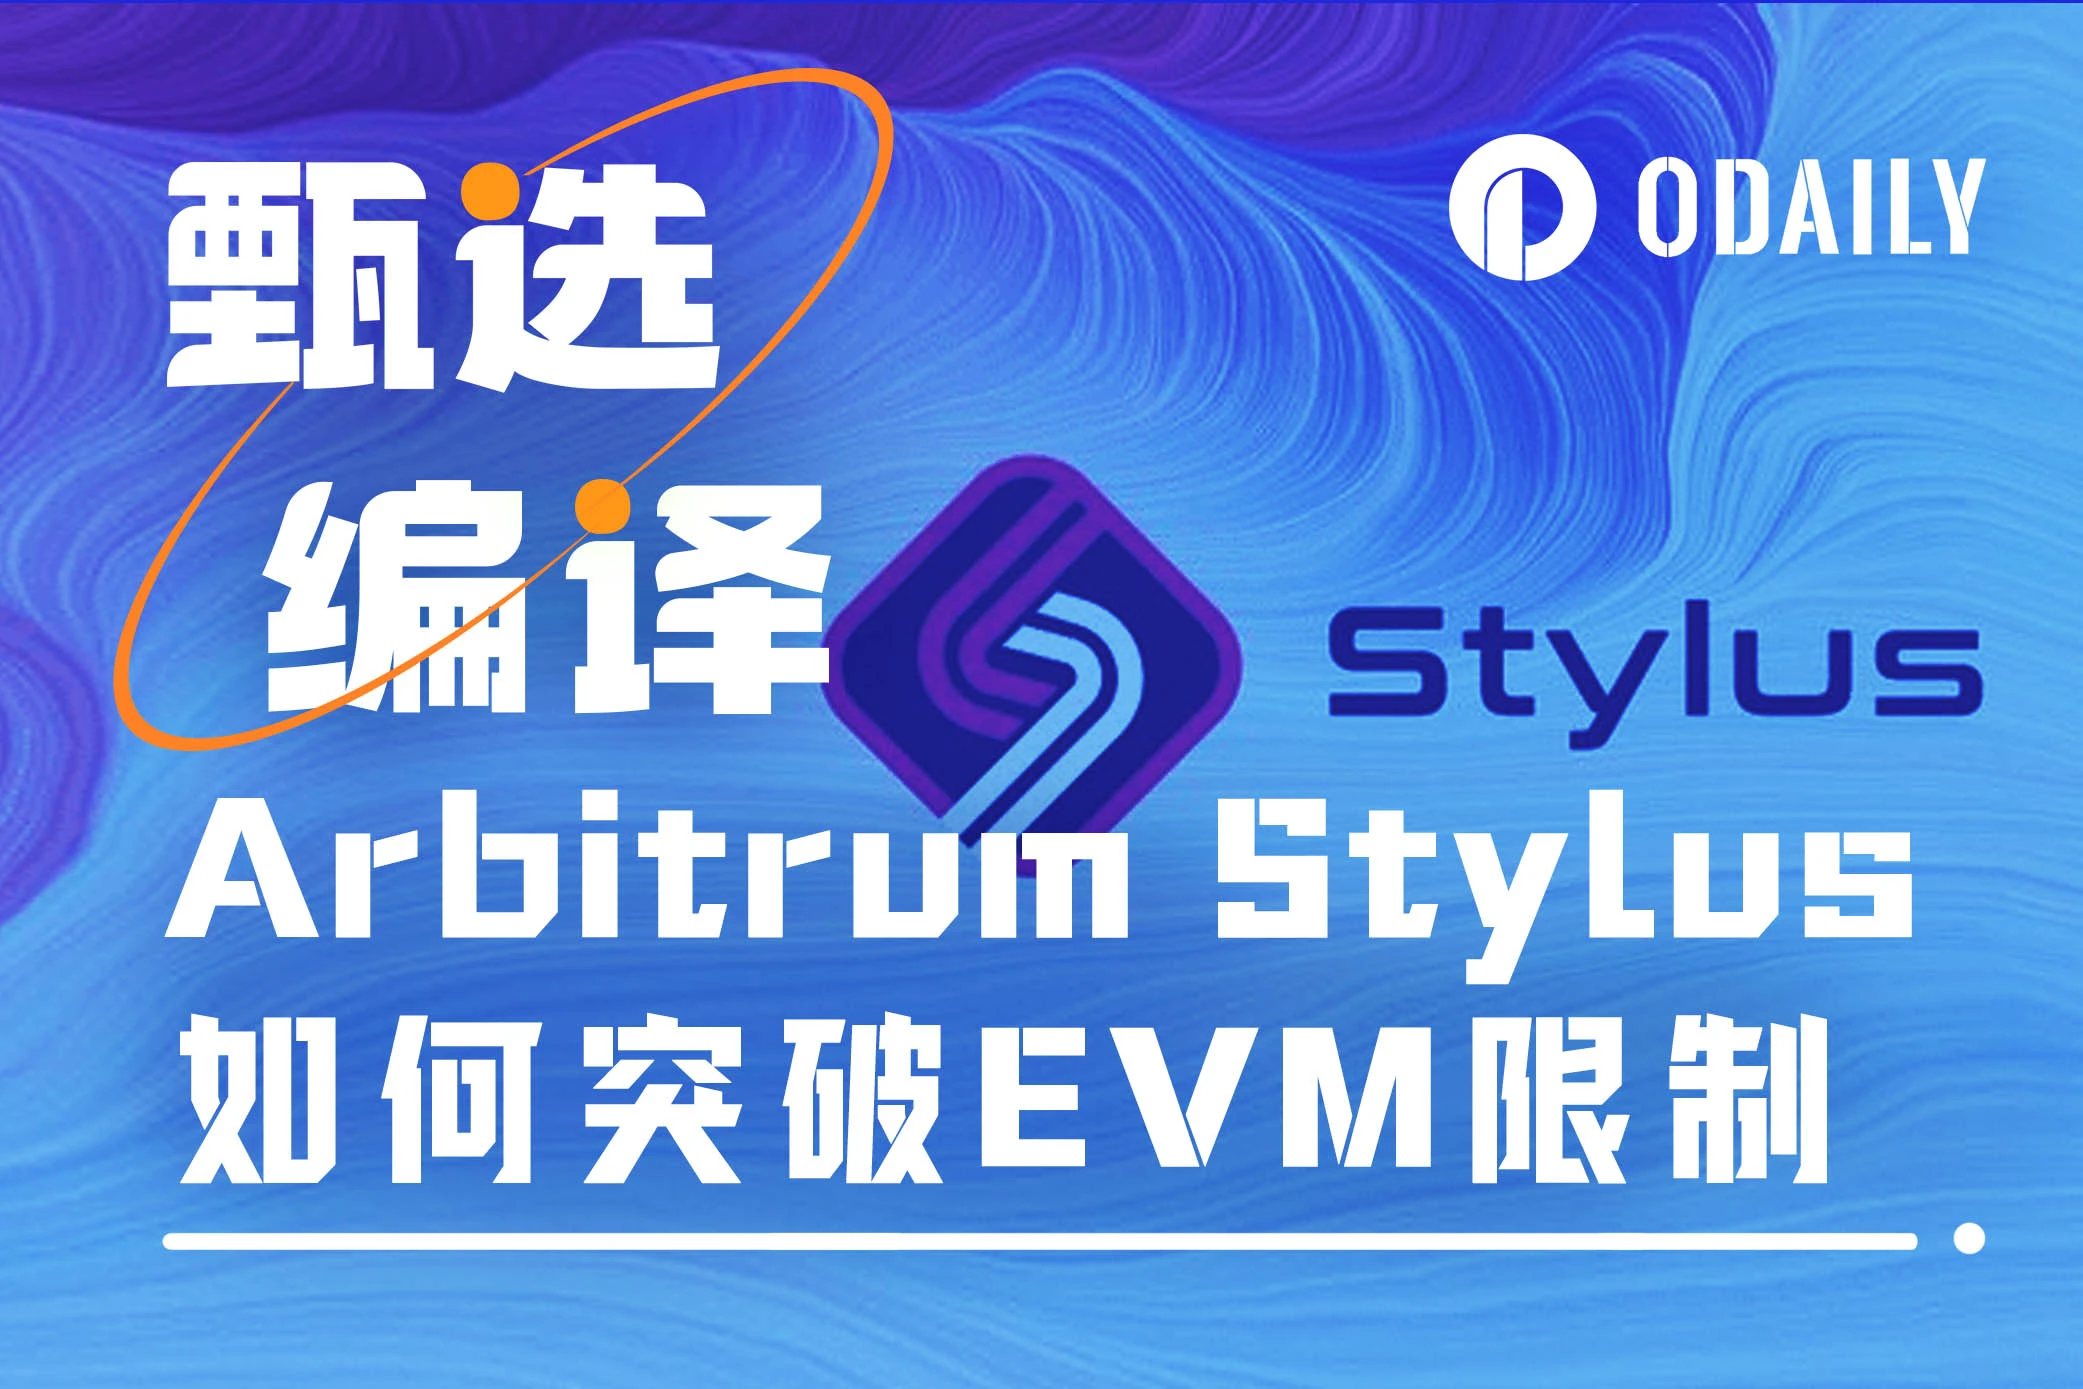 Arbitrum Stylus: EVM の限界を突破し、多数の成熟した開発者をエコシステムに導入